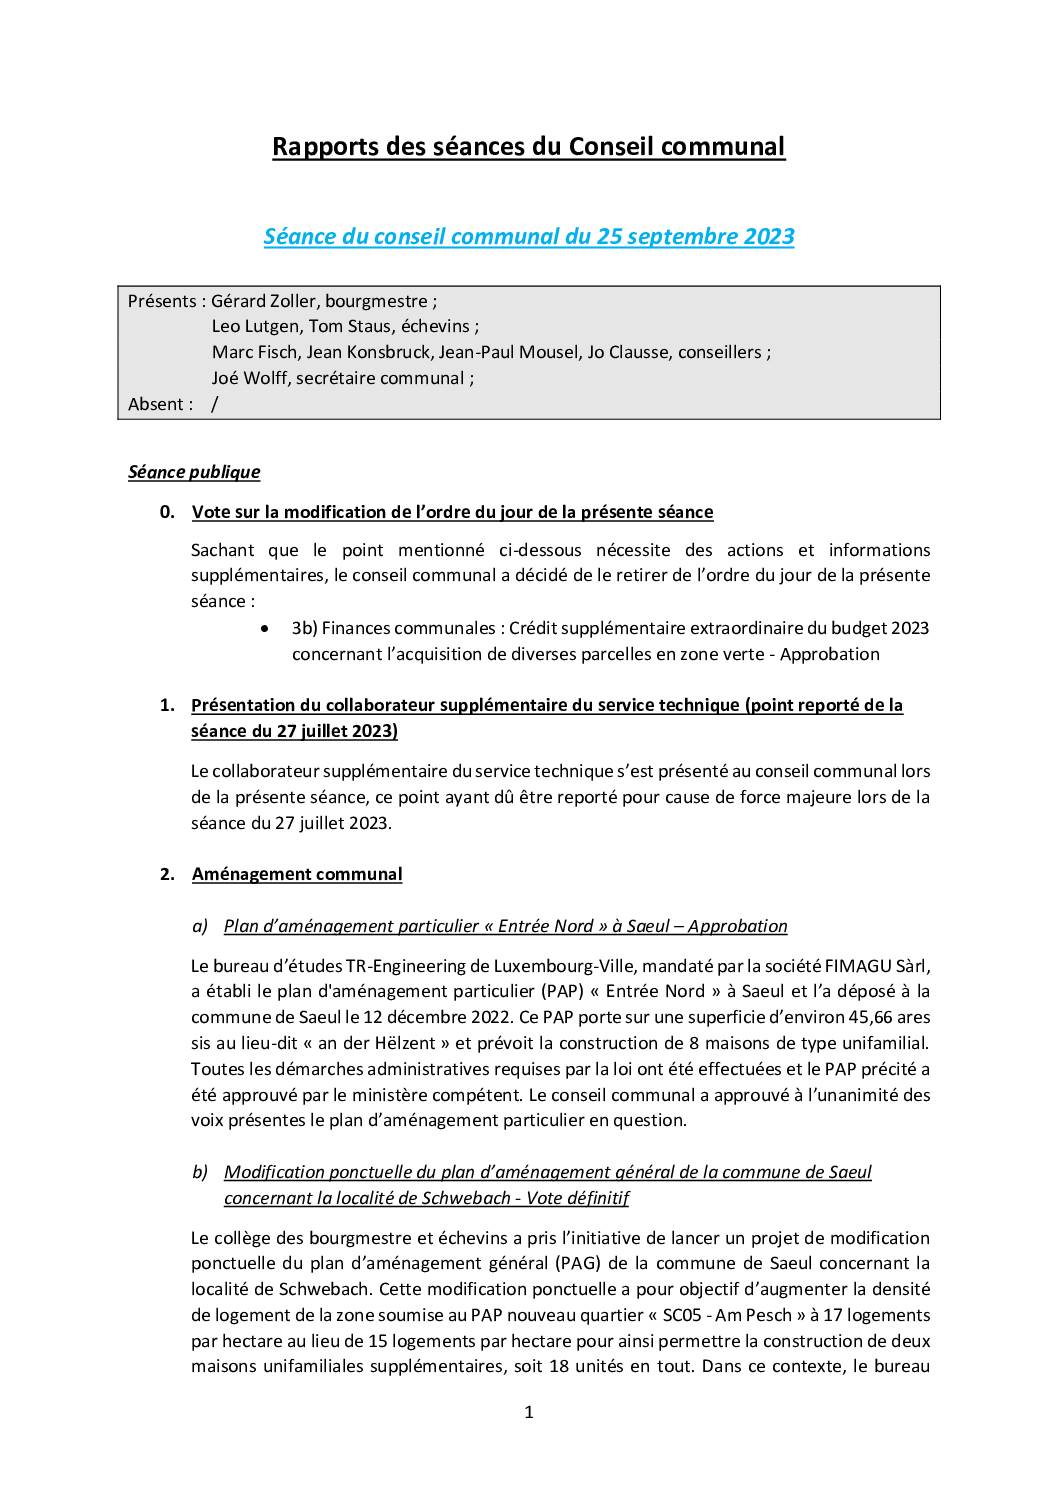 Rapports des séances du conseil communal – Gemengerotsrapporten (25.09.2023)